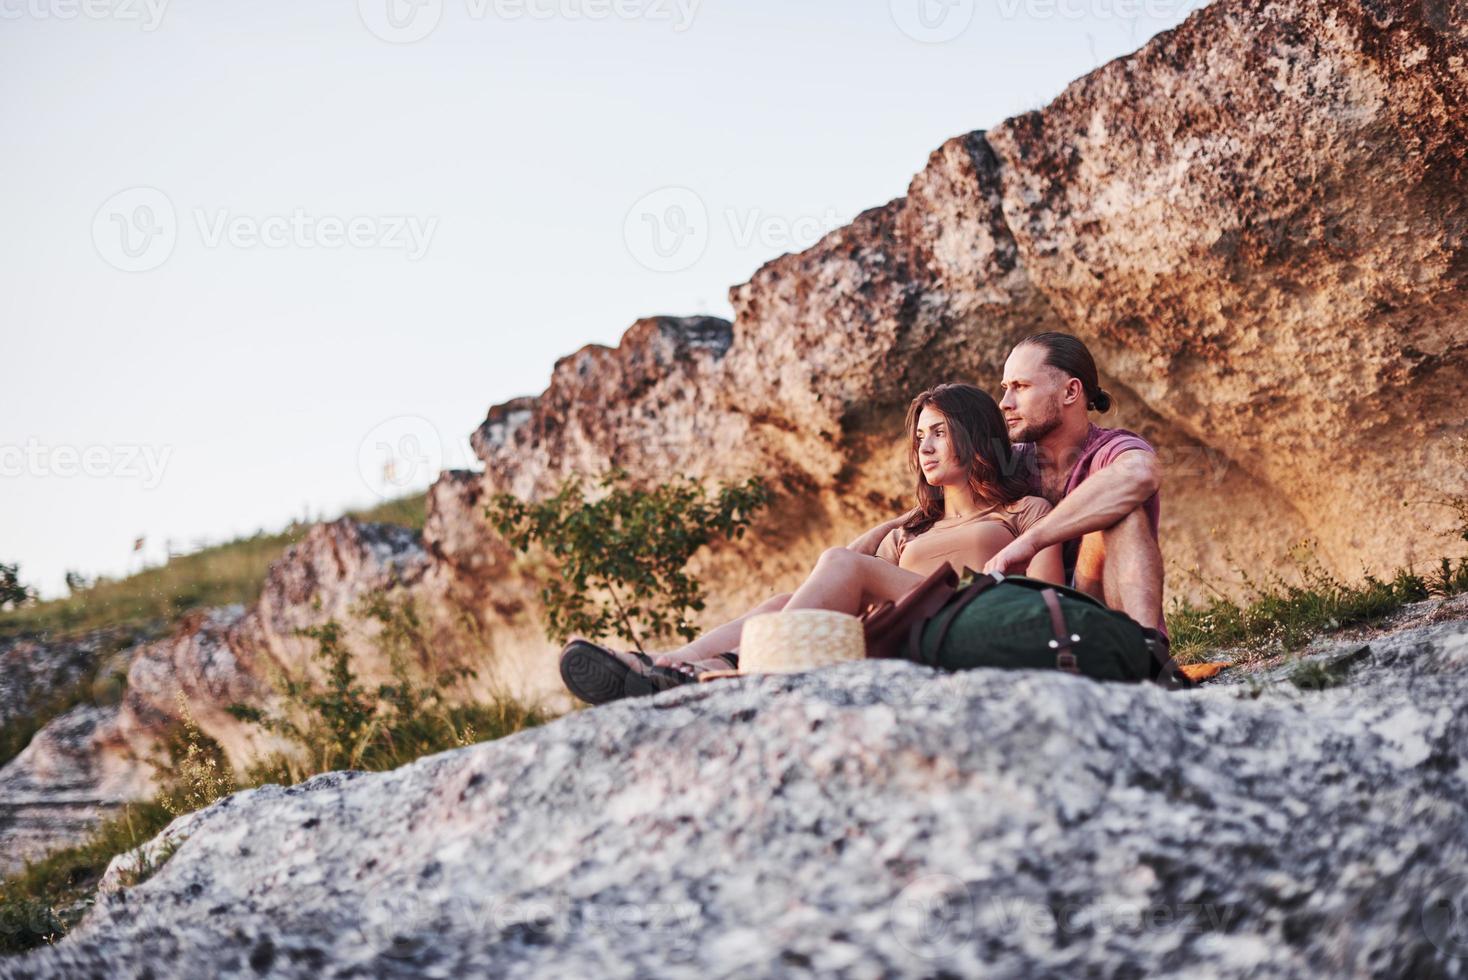 estado de ánimo de ensueño. dos personas sentadas en la roca y contemplando la hermosa naturaleza foto